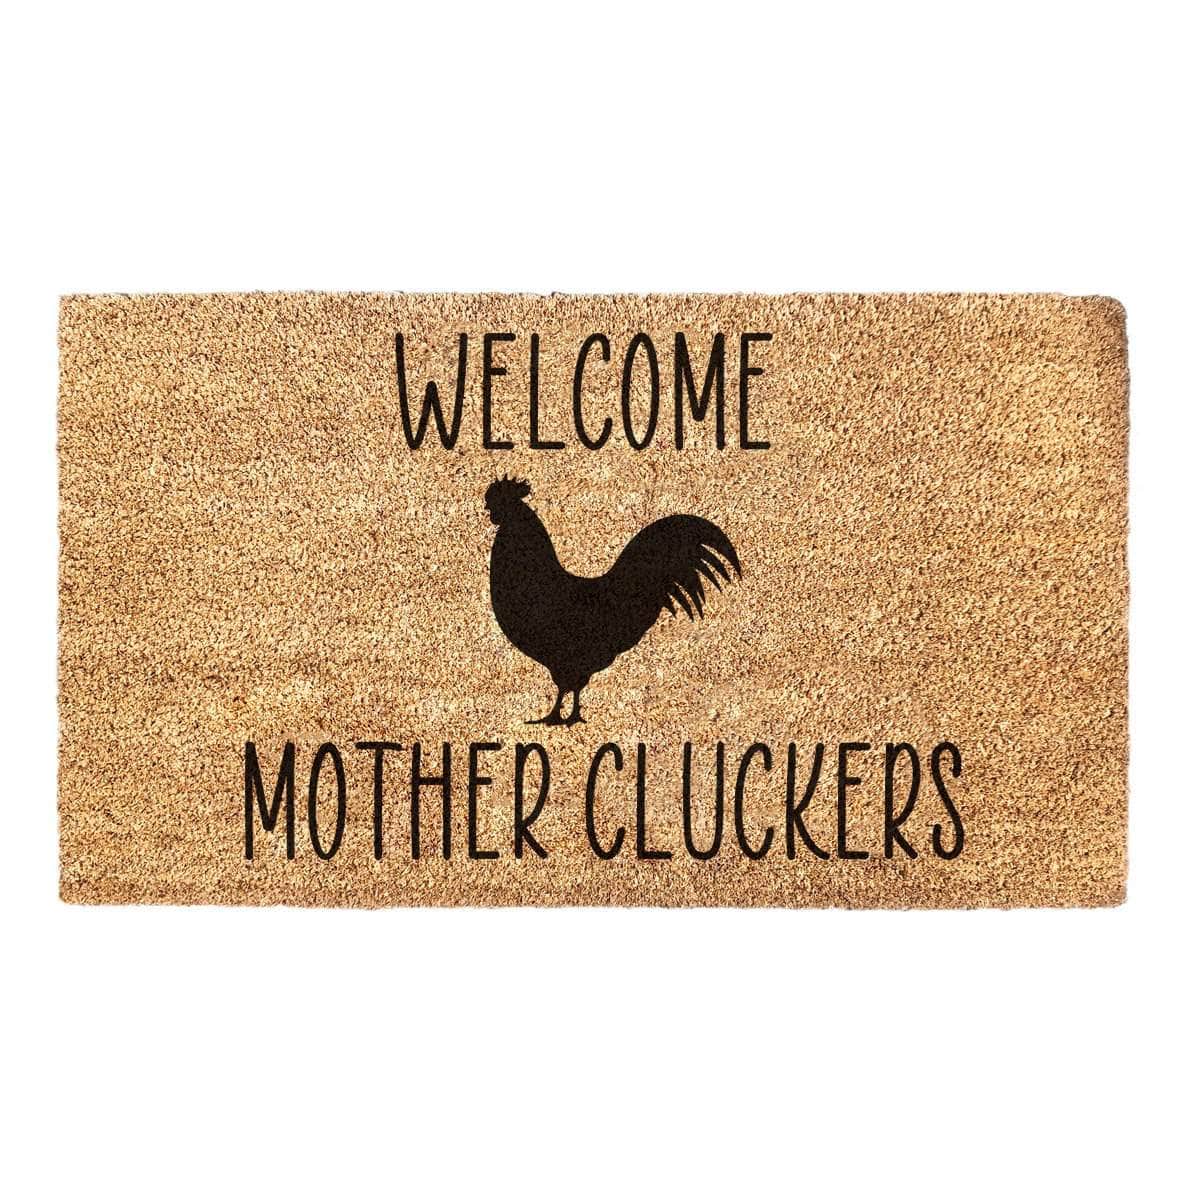 Welcome Mother Cluckers - Doormat